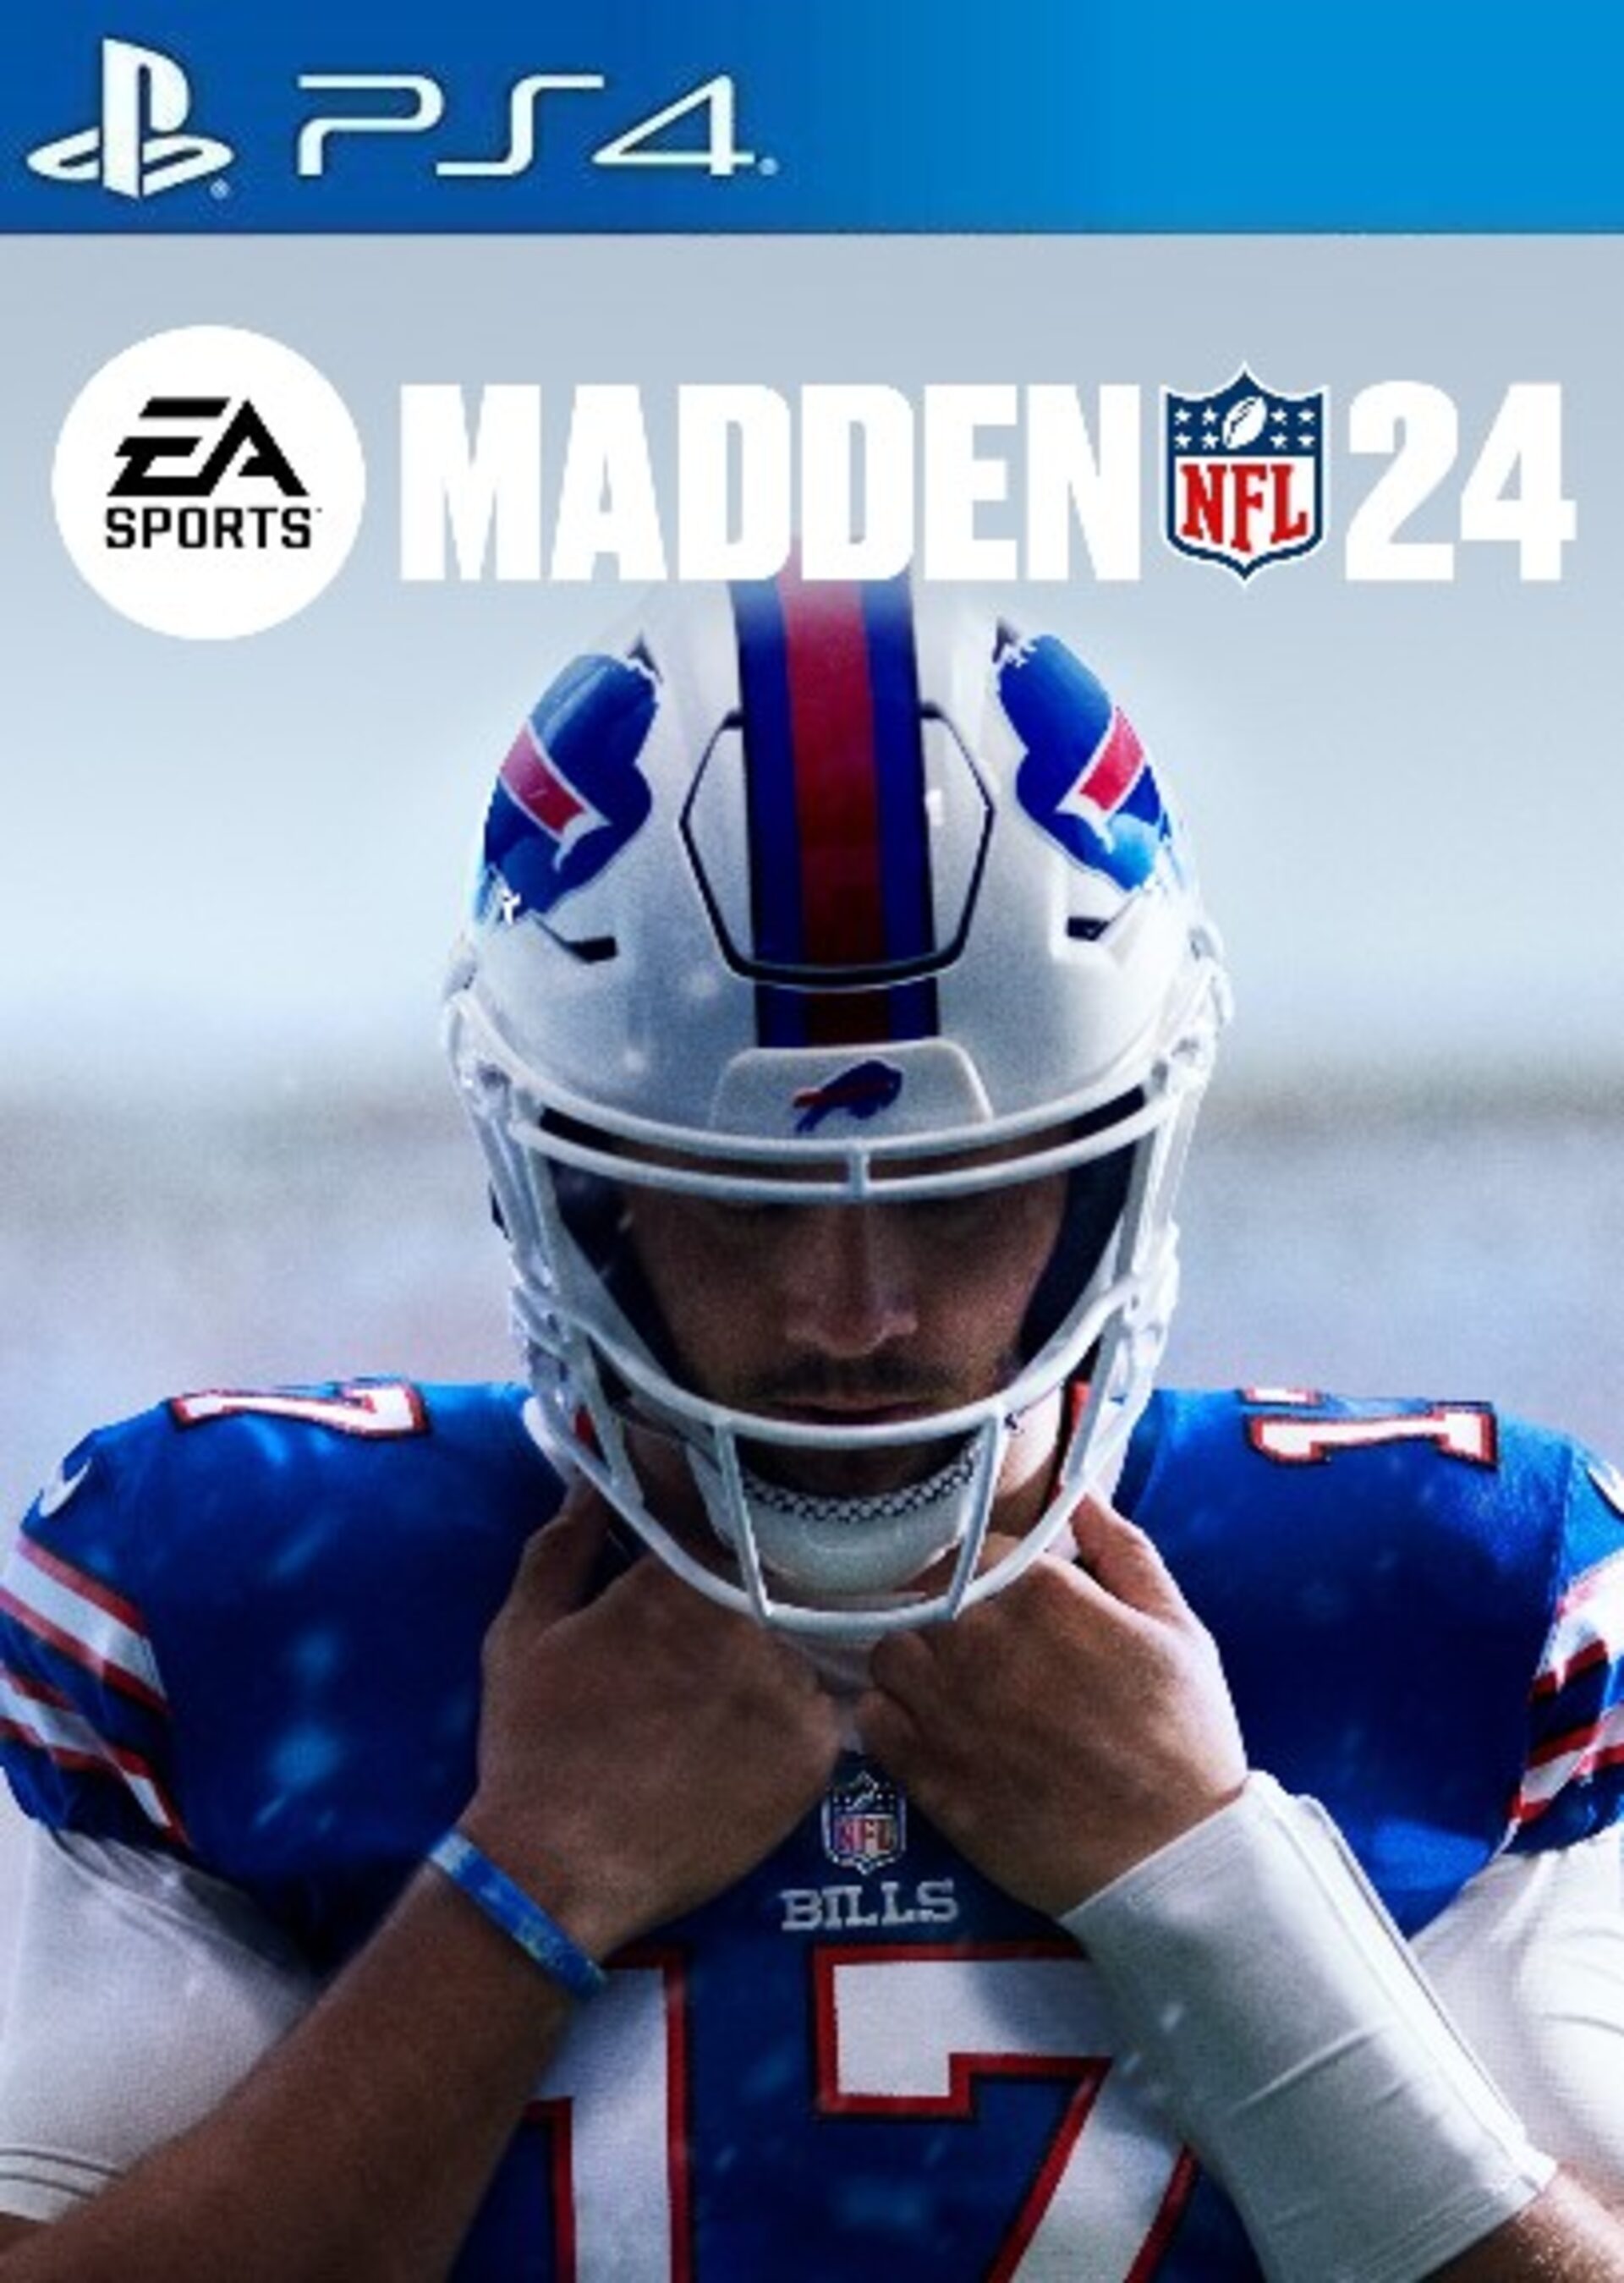 Madden NFL 23 - Pre Order Bonus DLC EU PS4 CD Key